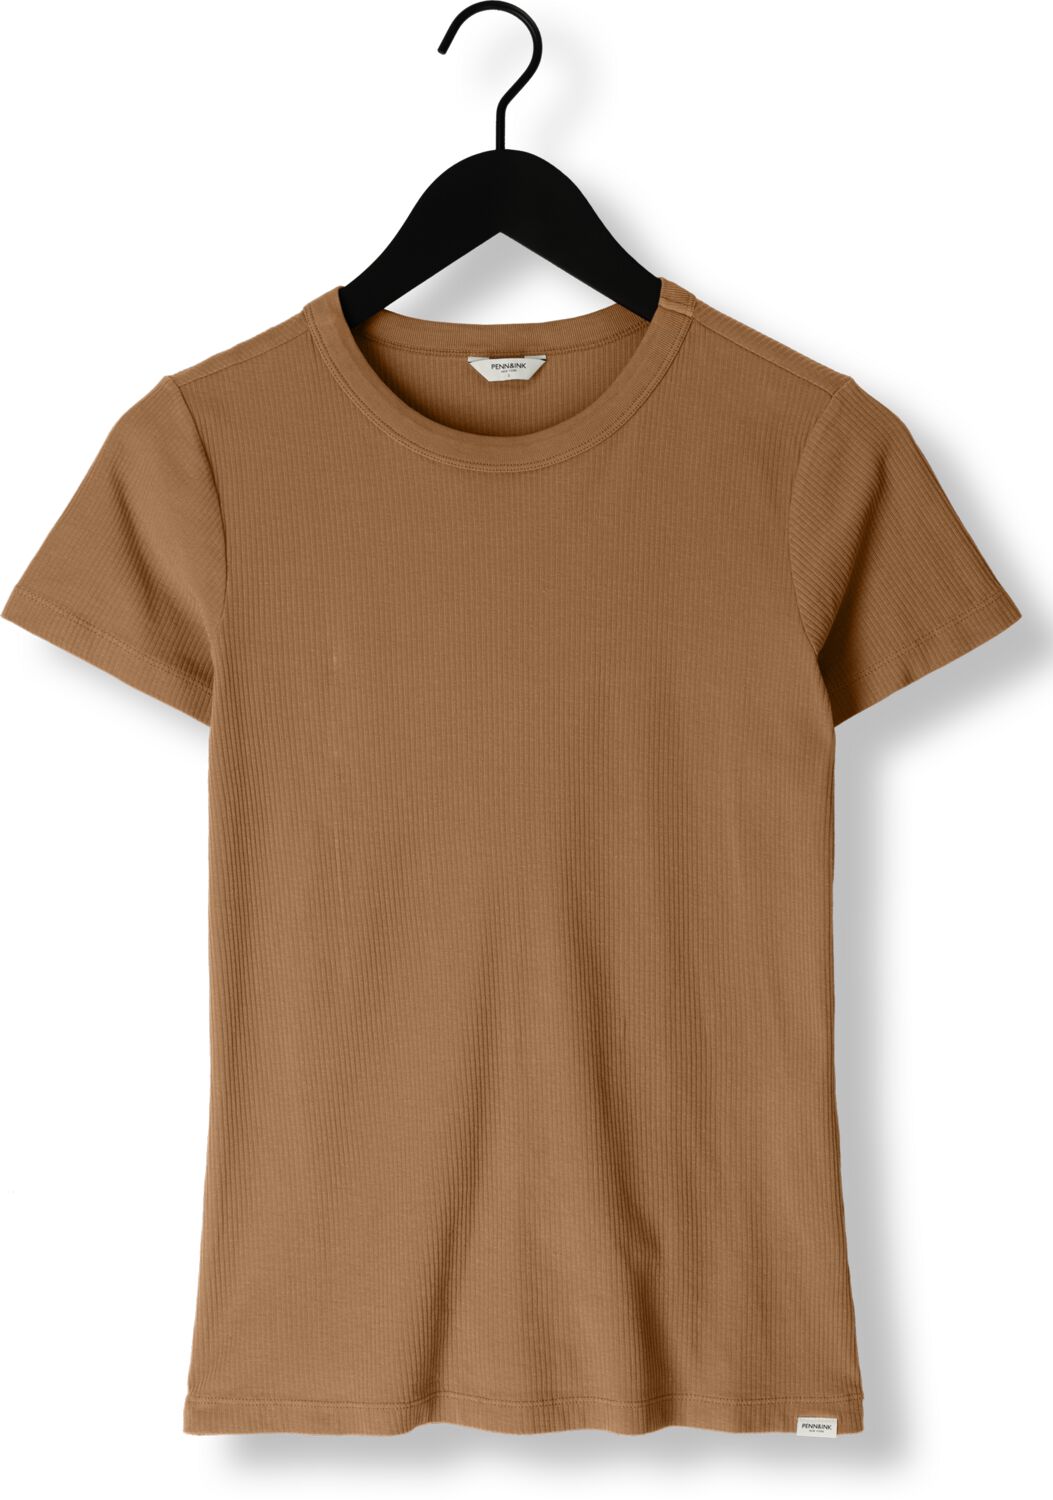 PENN & INK Dames Tops & T-shirts T-shirt Bruin